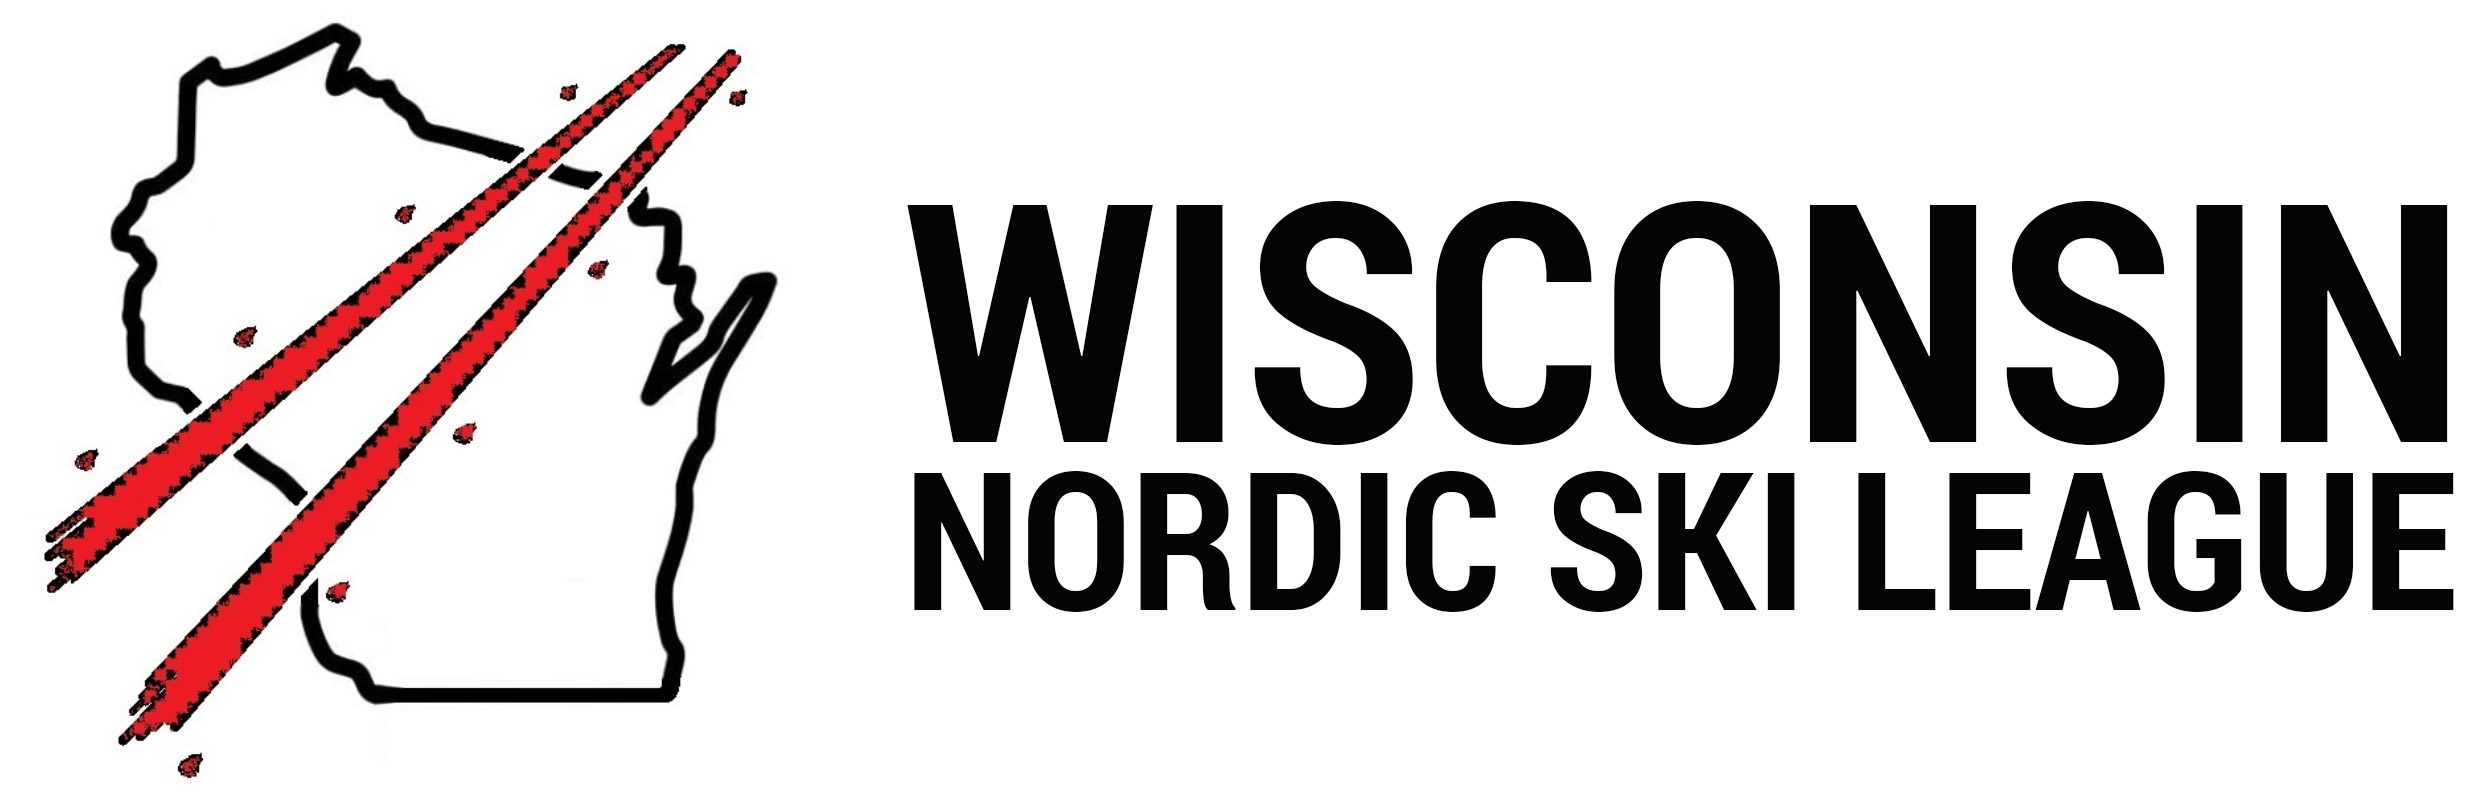 Wisconsin Nordic Ski League